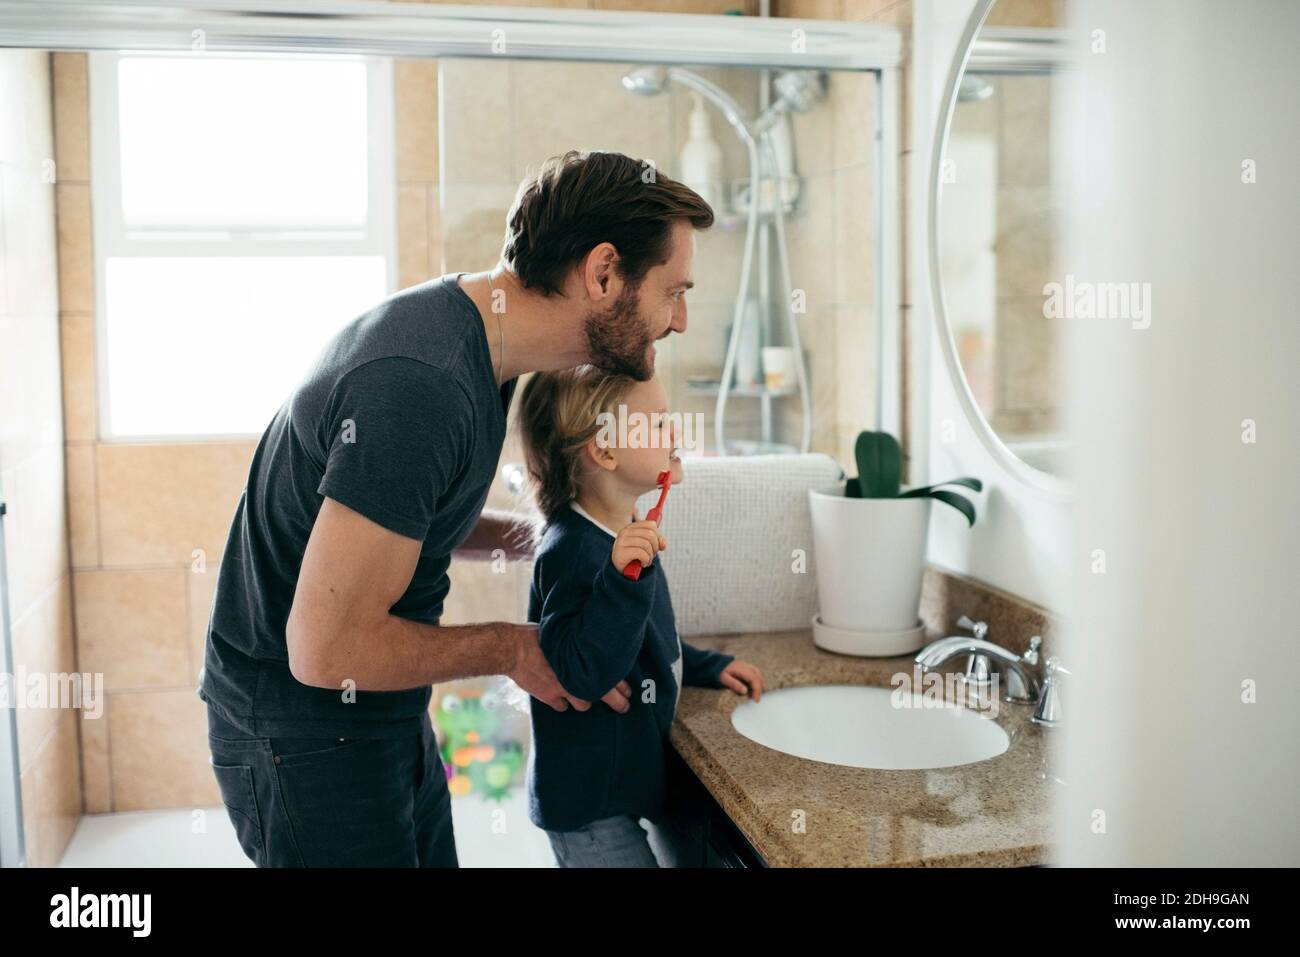 Vue latérale d'un père qui regarde sa fille se brosser les dents dans l'évier dans la salle de bains Banque D'Images